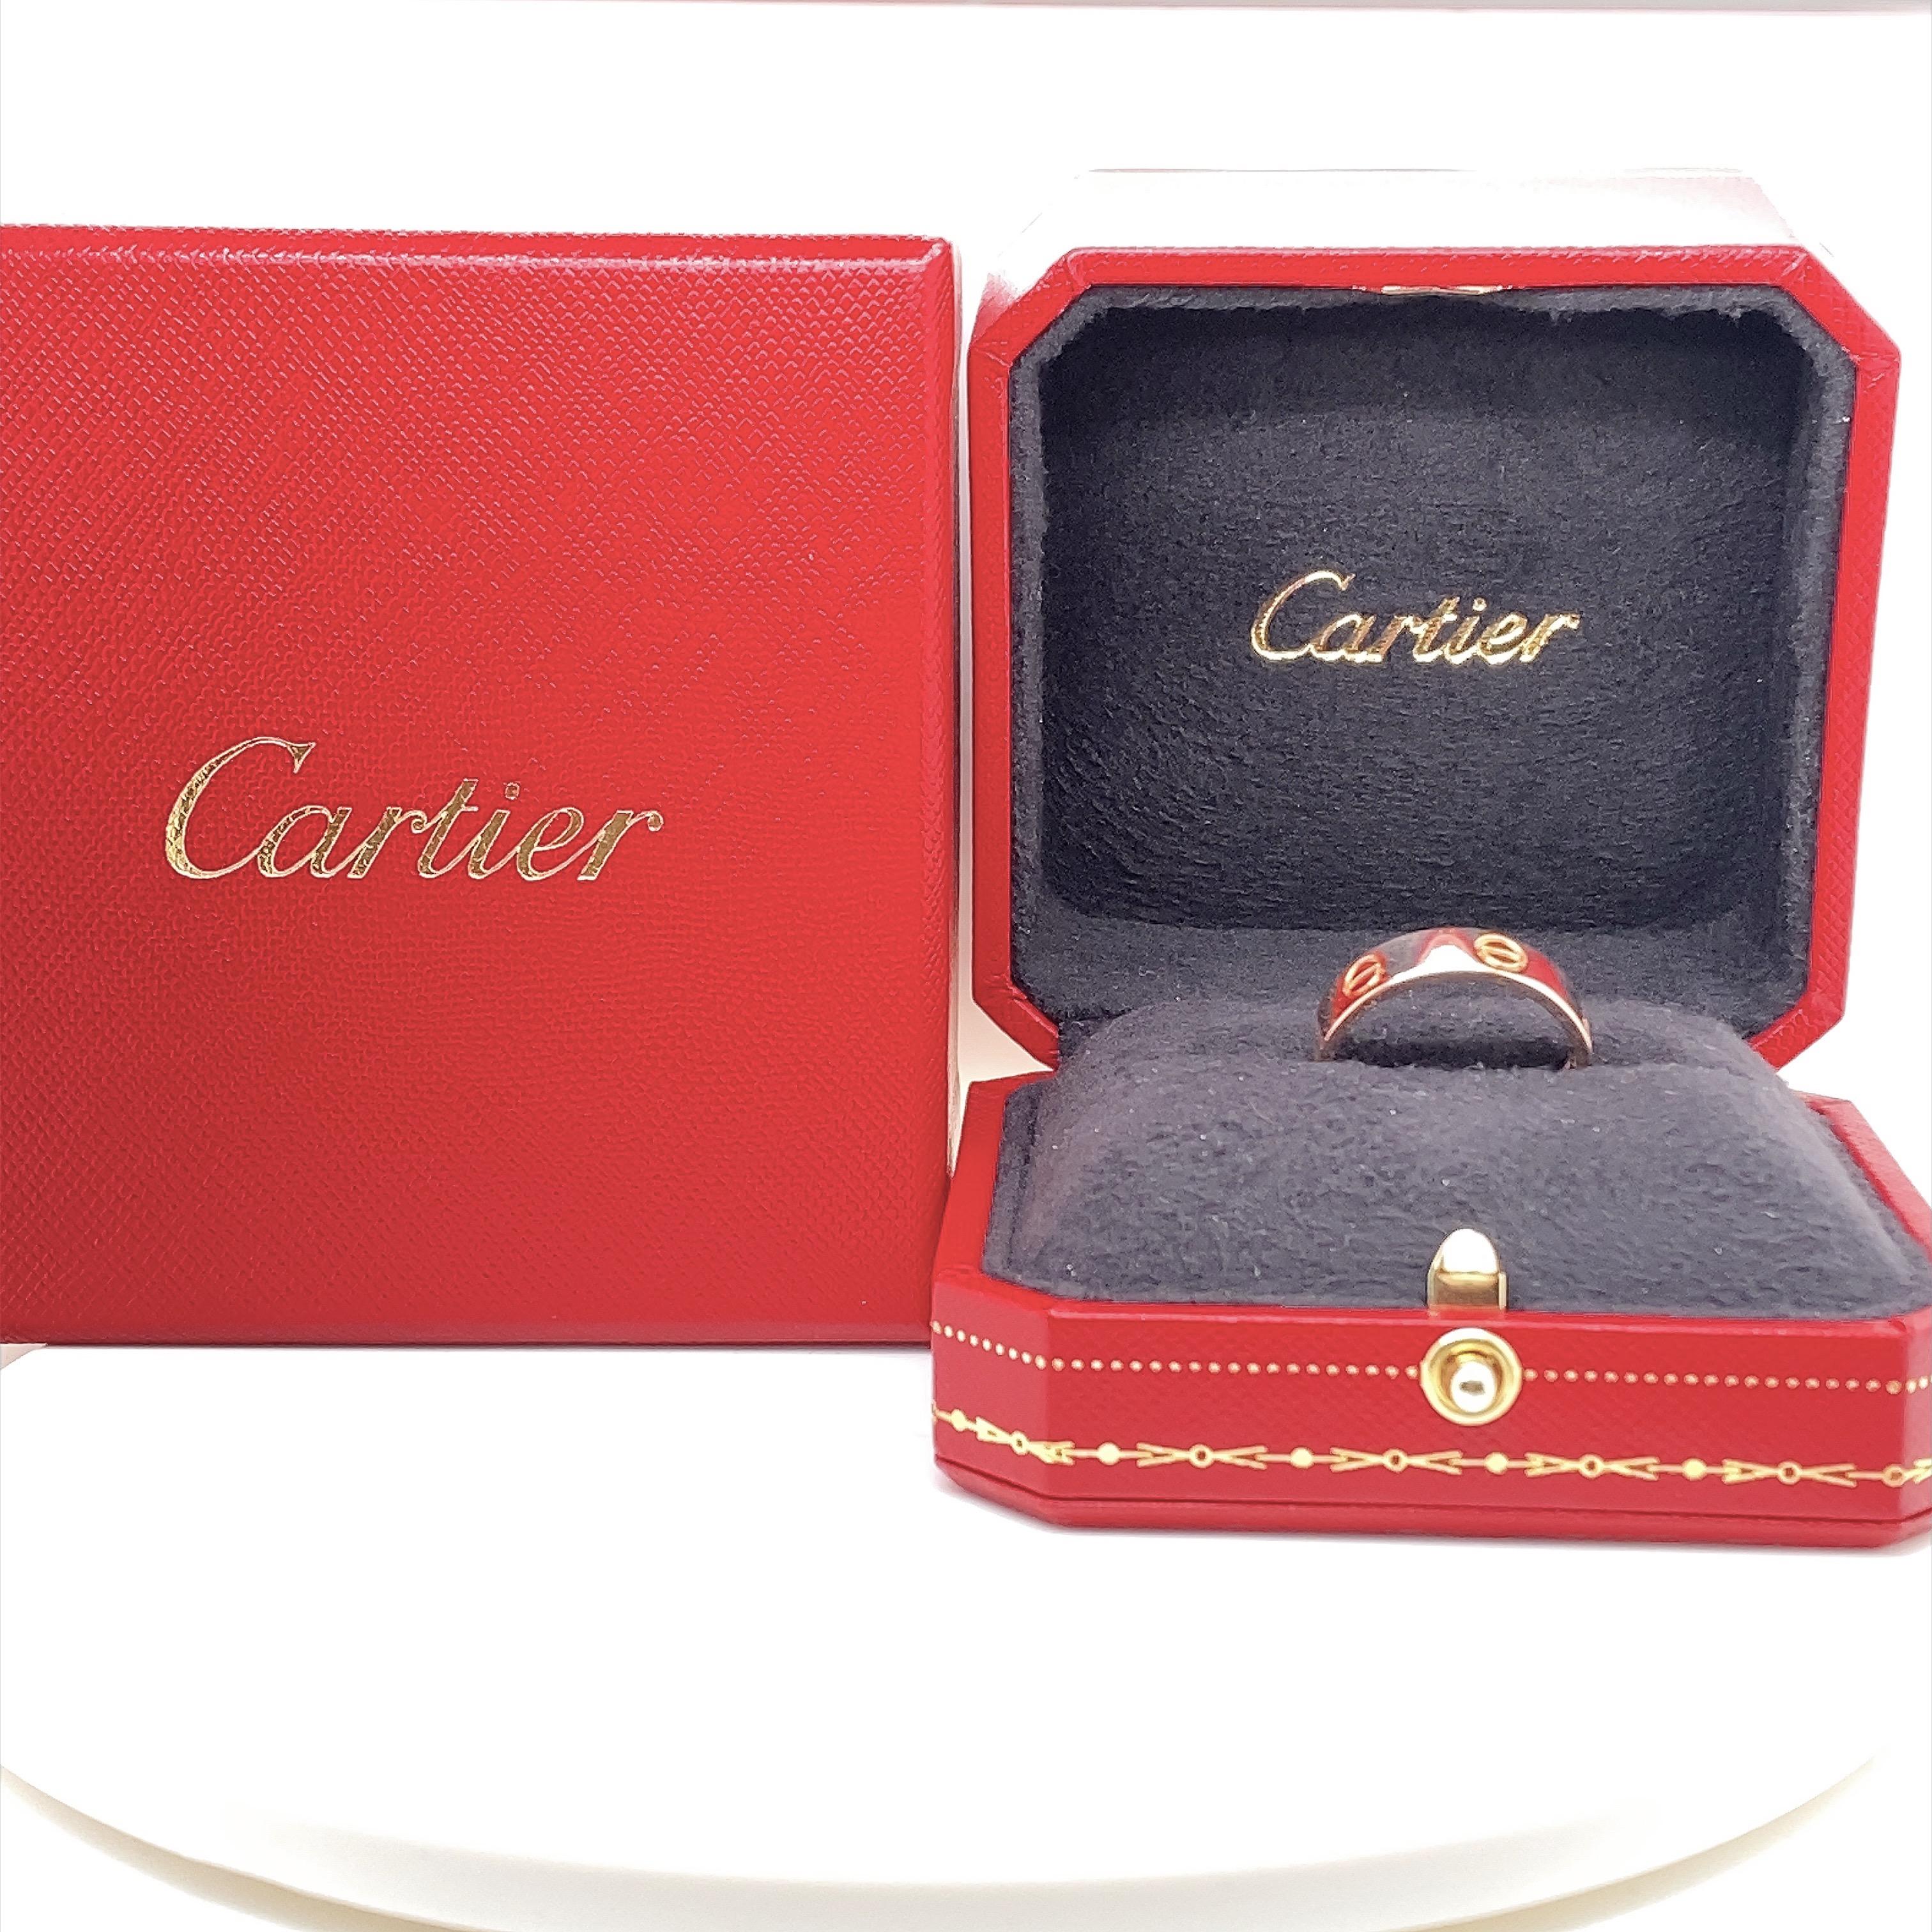 Bague à anneau LOVE de Cartier
Le style :  CRB4084800
Numéro de référence :  DSE***
Métal :   or rose 18kt
Taille :  Cartier 58 / US 8 1/2
Mesures :  5.5 MM
Hallmark :  ©Cartier 58 EHR*** Au 750 PGI
Comprend :  Boîte à bagues Cartier - Reçu